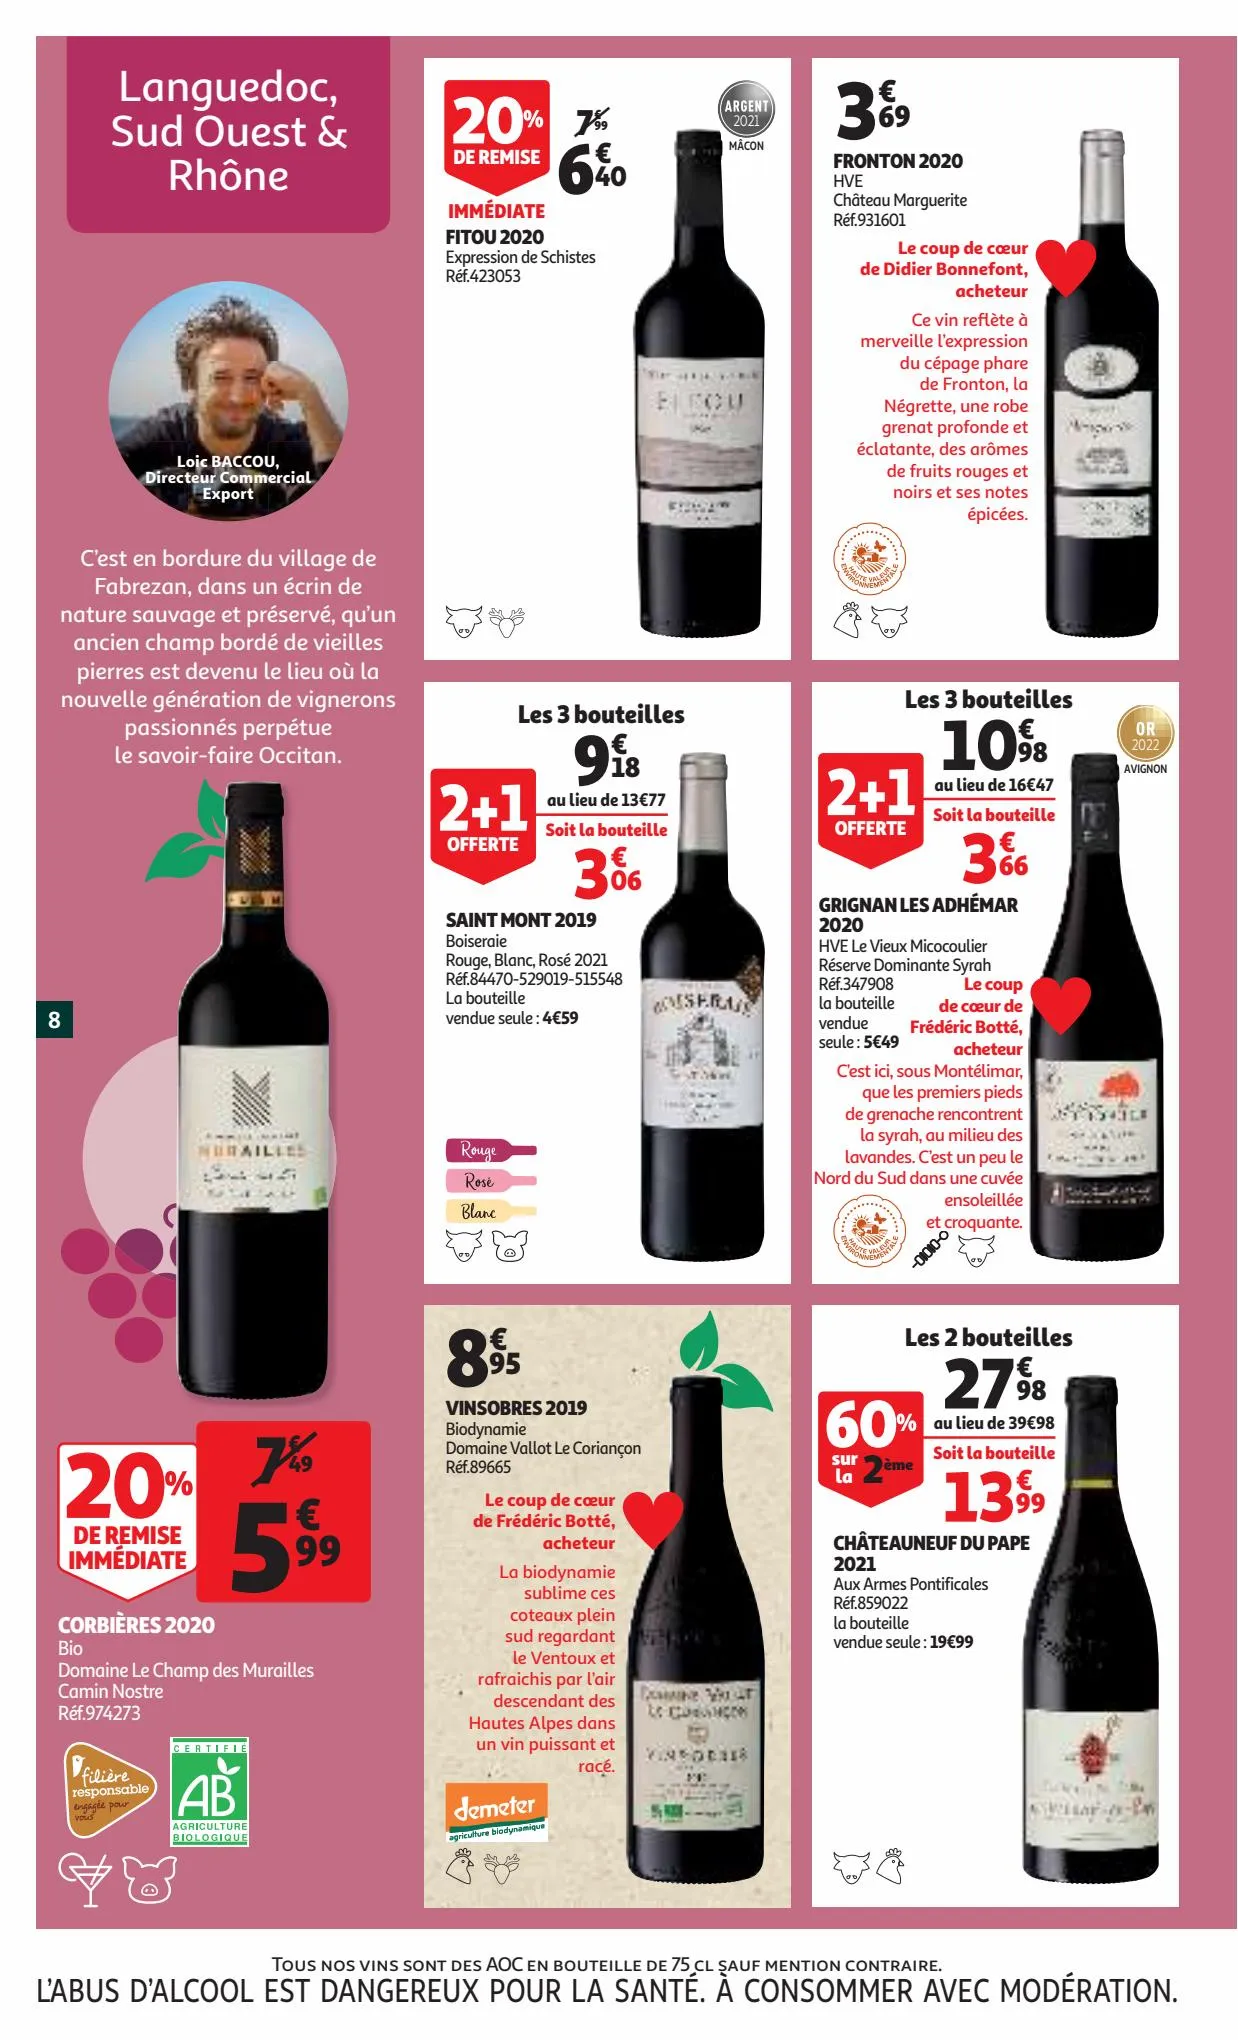 Catalogue La foire aux vins, page 00008